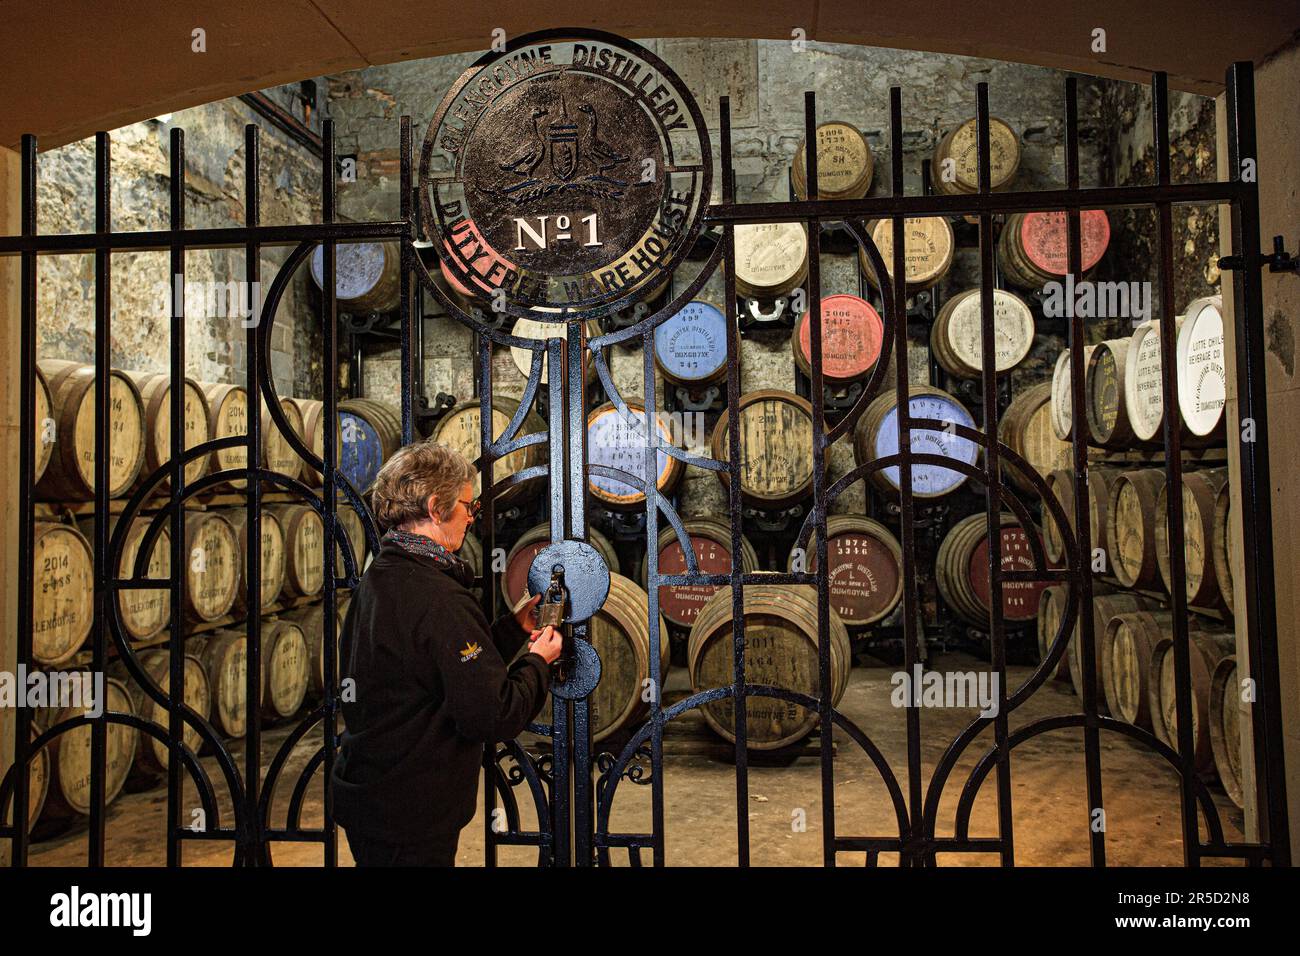 Der Reiseleiter für die Warehouse No. 1 Destillerie öffnet das Iron Gate in der Glengoyne Distillery - Dumgoyne, Stirlingshire, Schottland, Großbritannien. Stockfoto